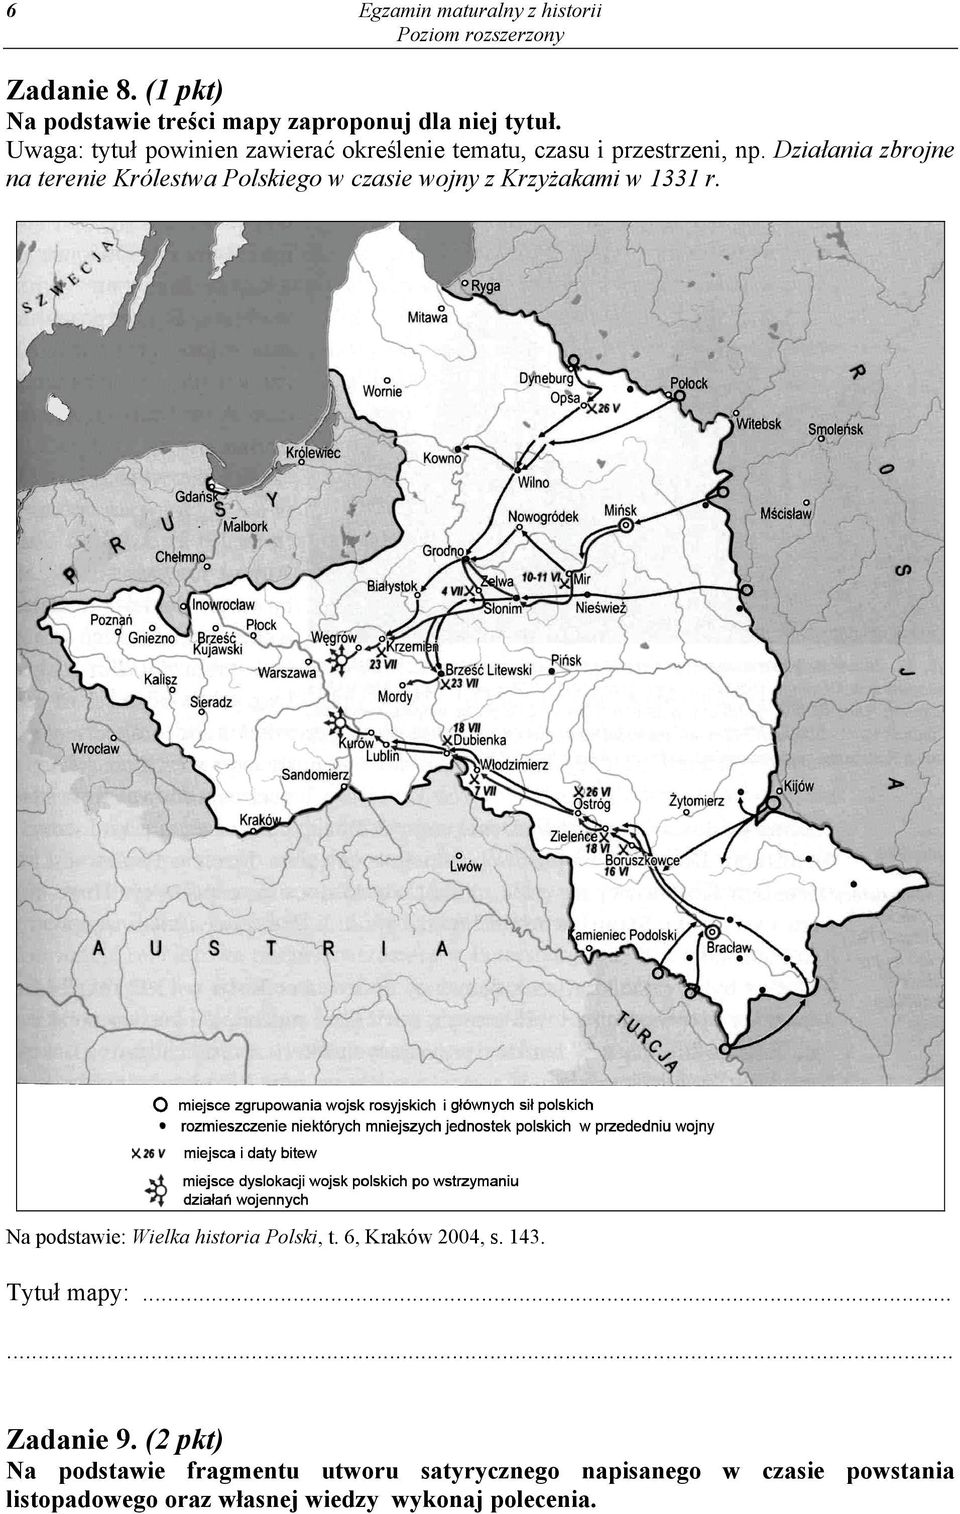 Działania zbrojne na terenie Królestwa Polskiego w czasie wojny z Krzyżakami w 1331 r.